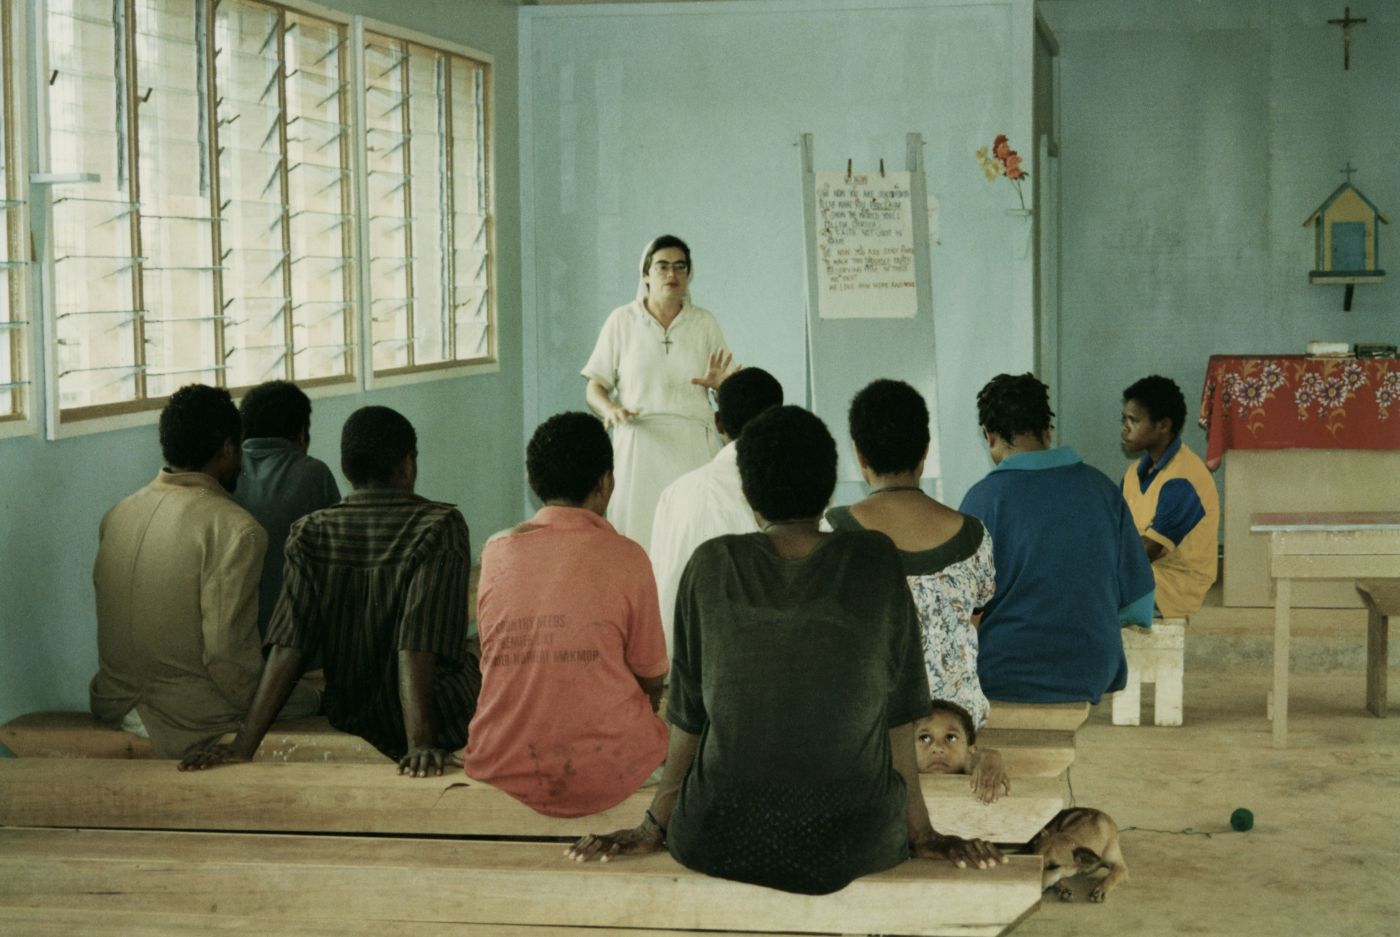 Photographie en couleur d’une religieuse d’âge moyen, vêtue de blanc. Elle enseigne à un groupe de neuf adultes noirs dans une salle de classe rudimentaire. Les étudiants sont assis sur des bancs de bois. Un jeune garçon et un chien sont aussi dans la salle de classe.